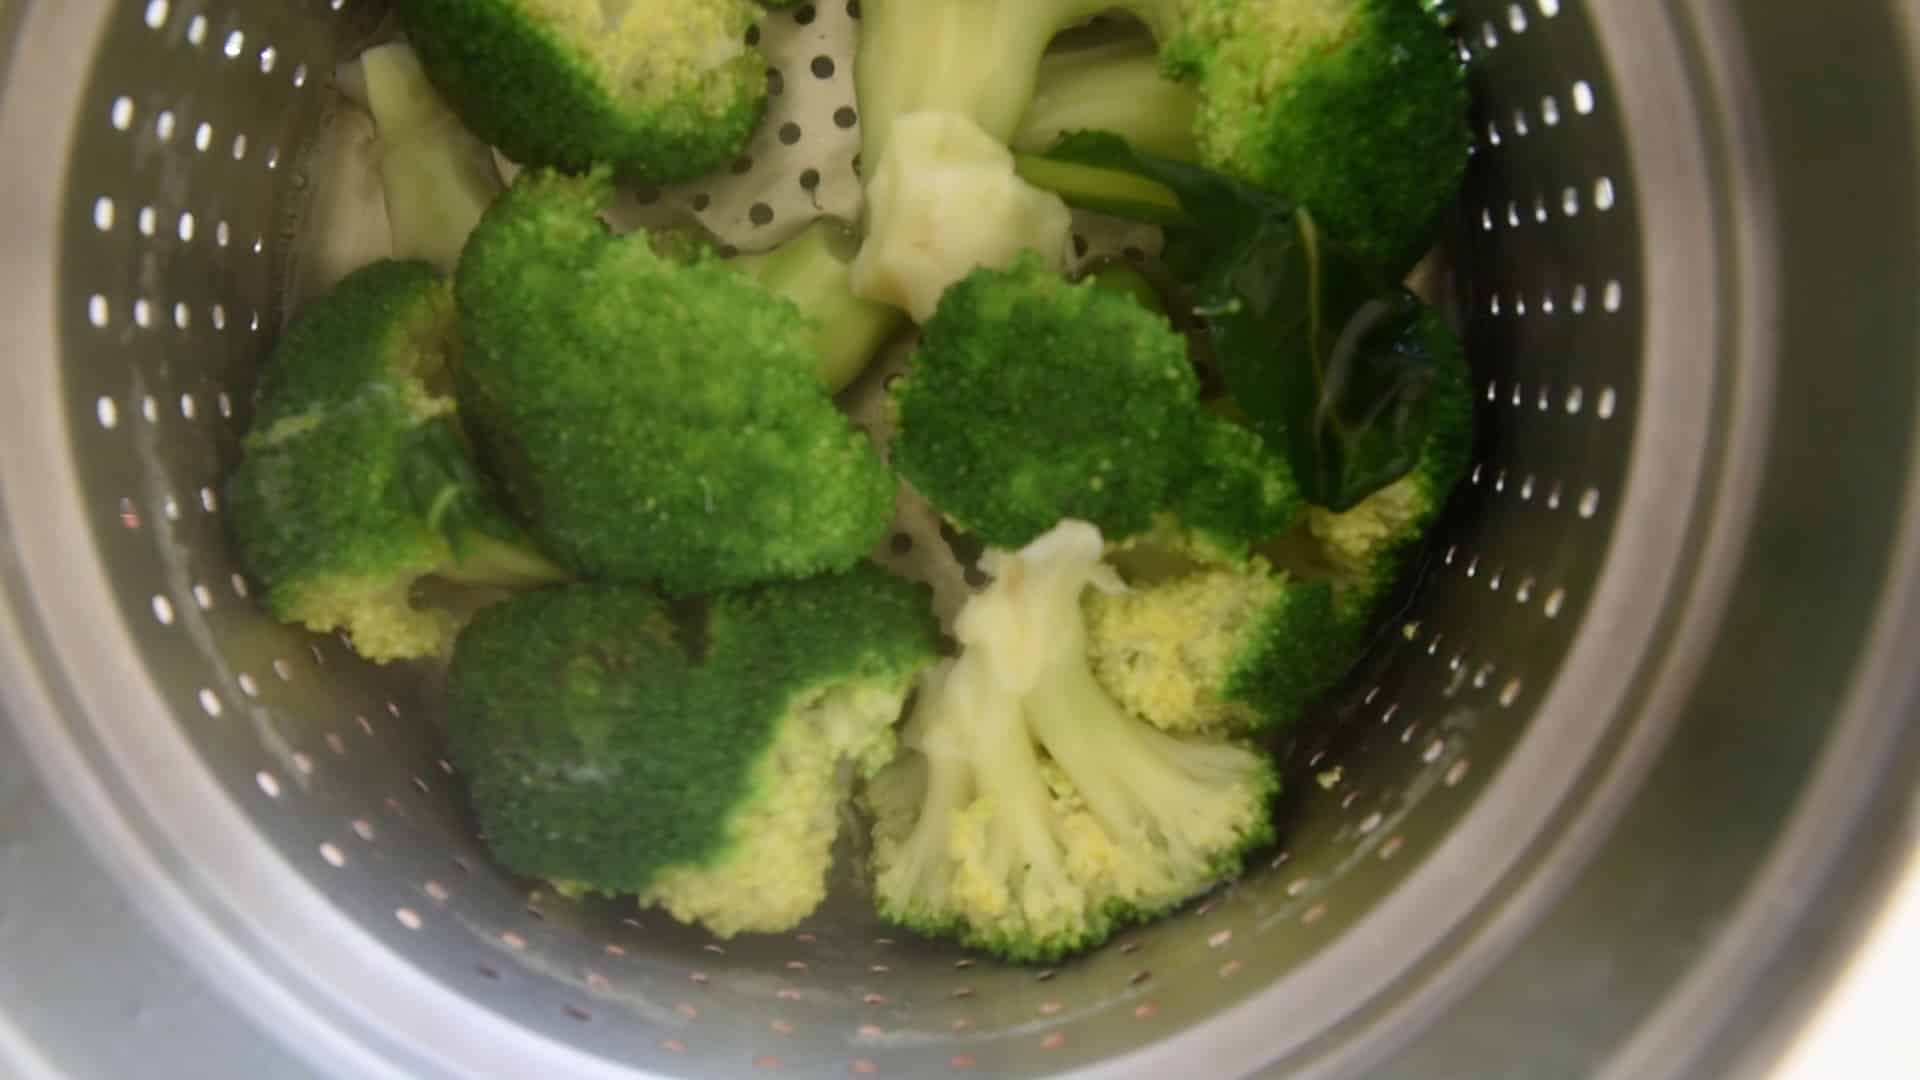 Drain the broccoli